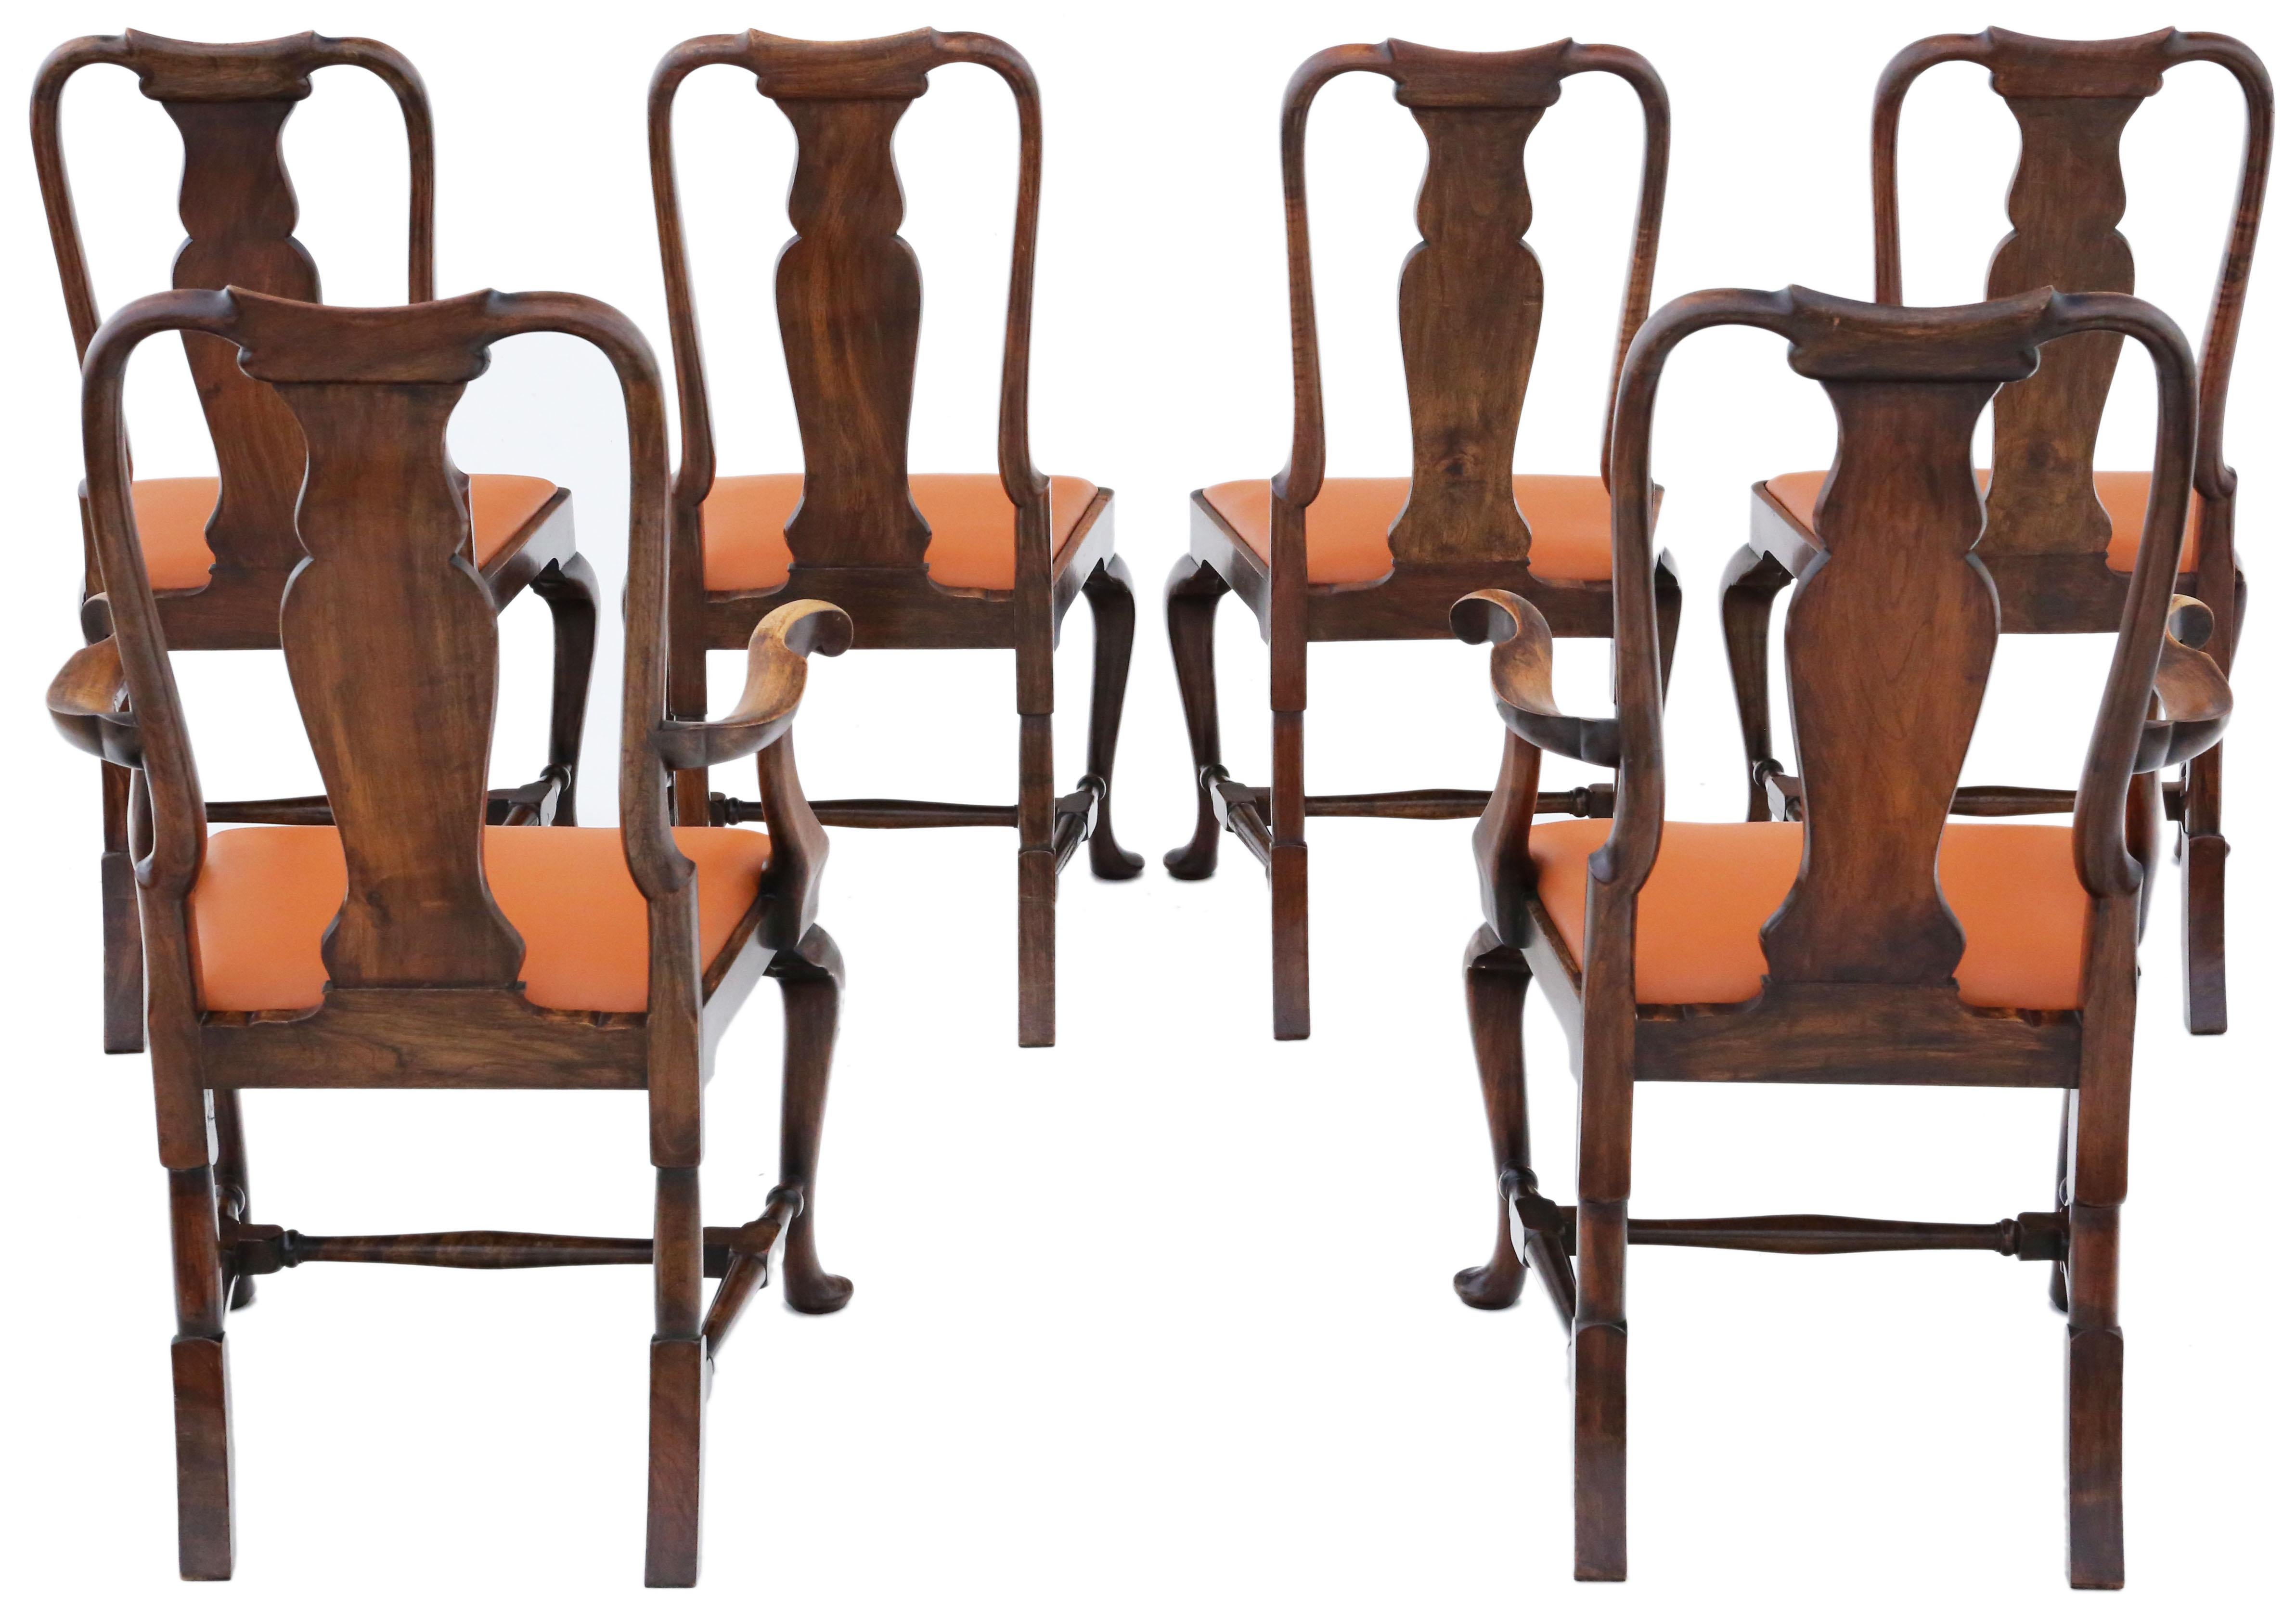 Anciennes chaises de salle à manger en ronce de noyer de style néo-Queen Anne, ensemble de 6 (Circa 1915)

Construction solide et robuste, sans joints lâches ni vers de bois.

Récemment, il a été recouvert de cuir fauve.

Dimensions :

Chaise :